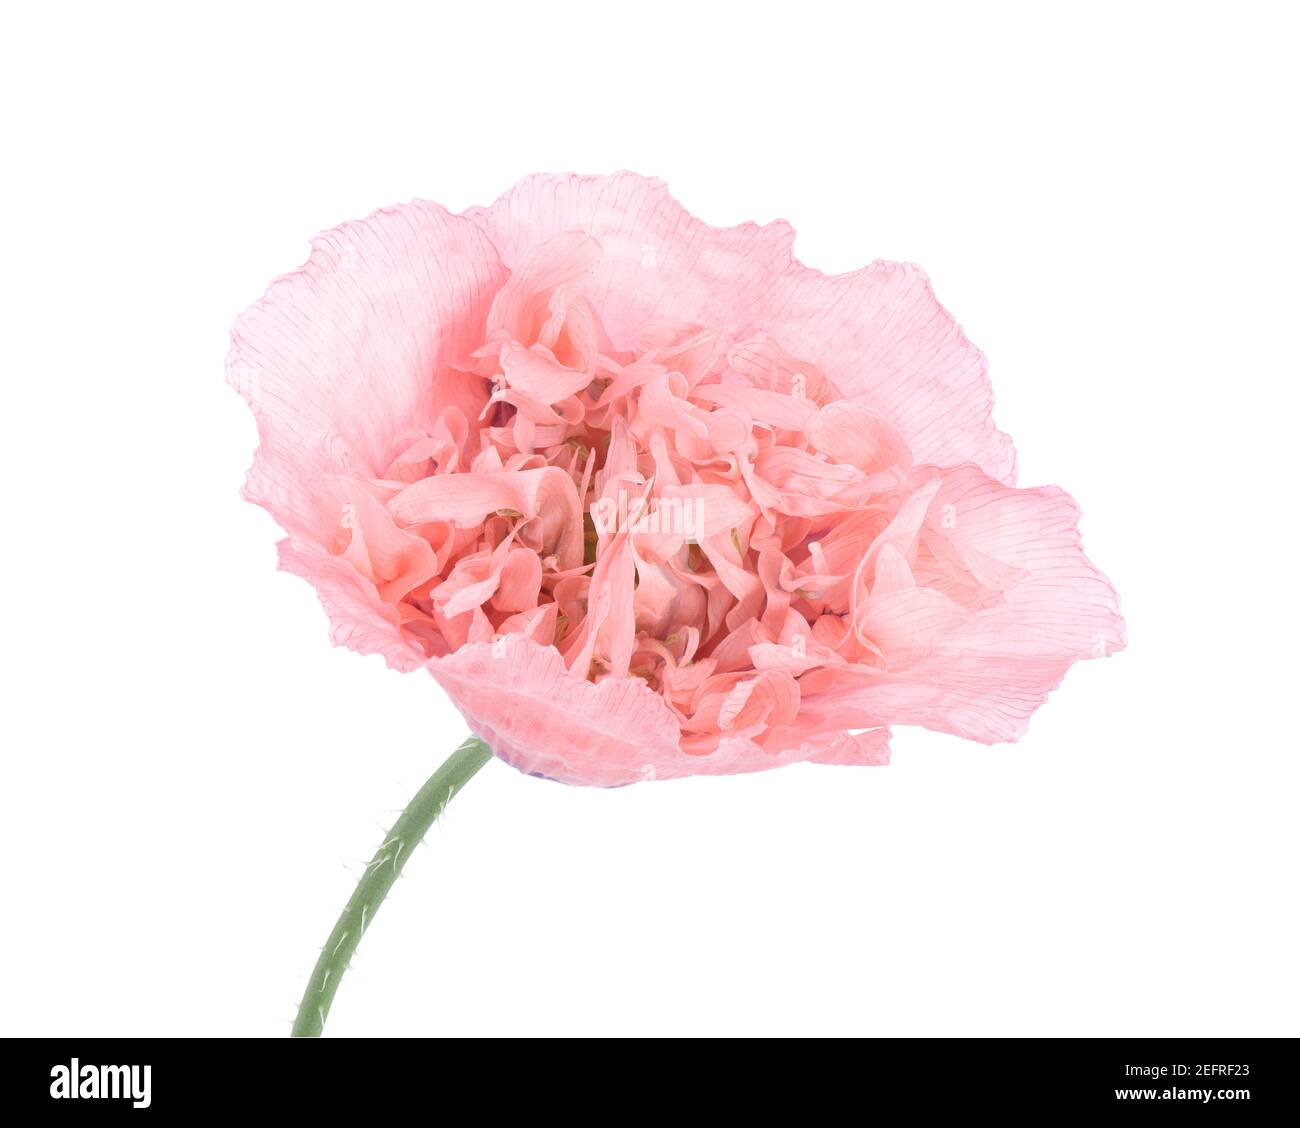 Coquelicot rose, gros plan d'une fleur aux pétales rose clair, vue de face isolée sur fond blanc de studio. Papaver somniferum, Peoniflorum. Rose Pa Banque D'Images